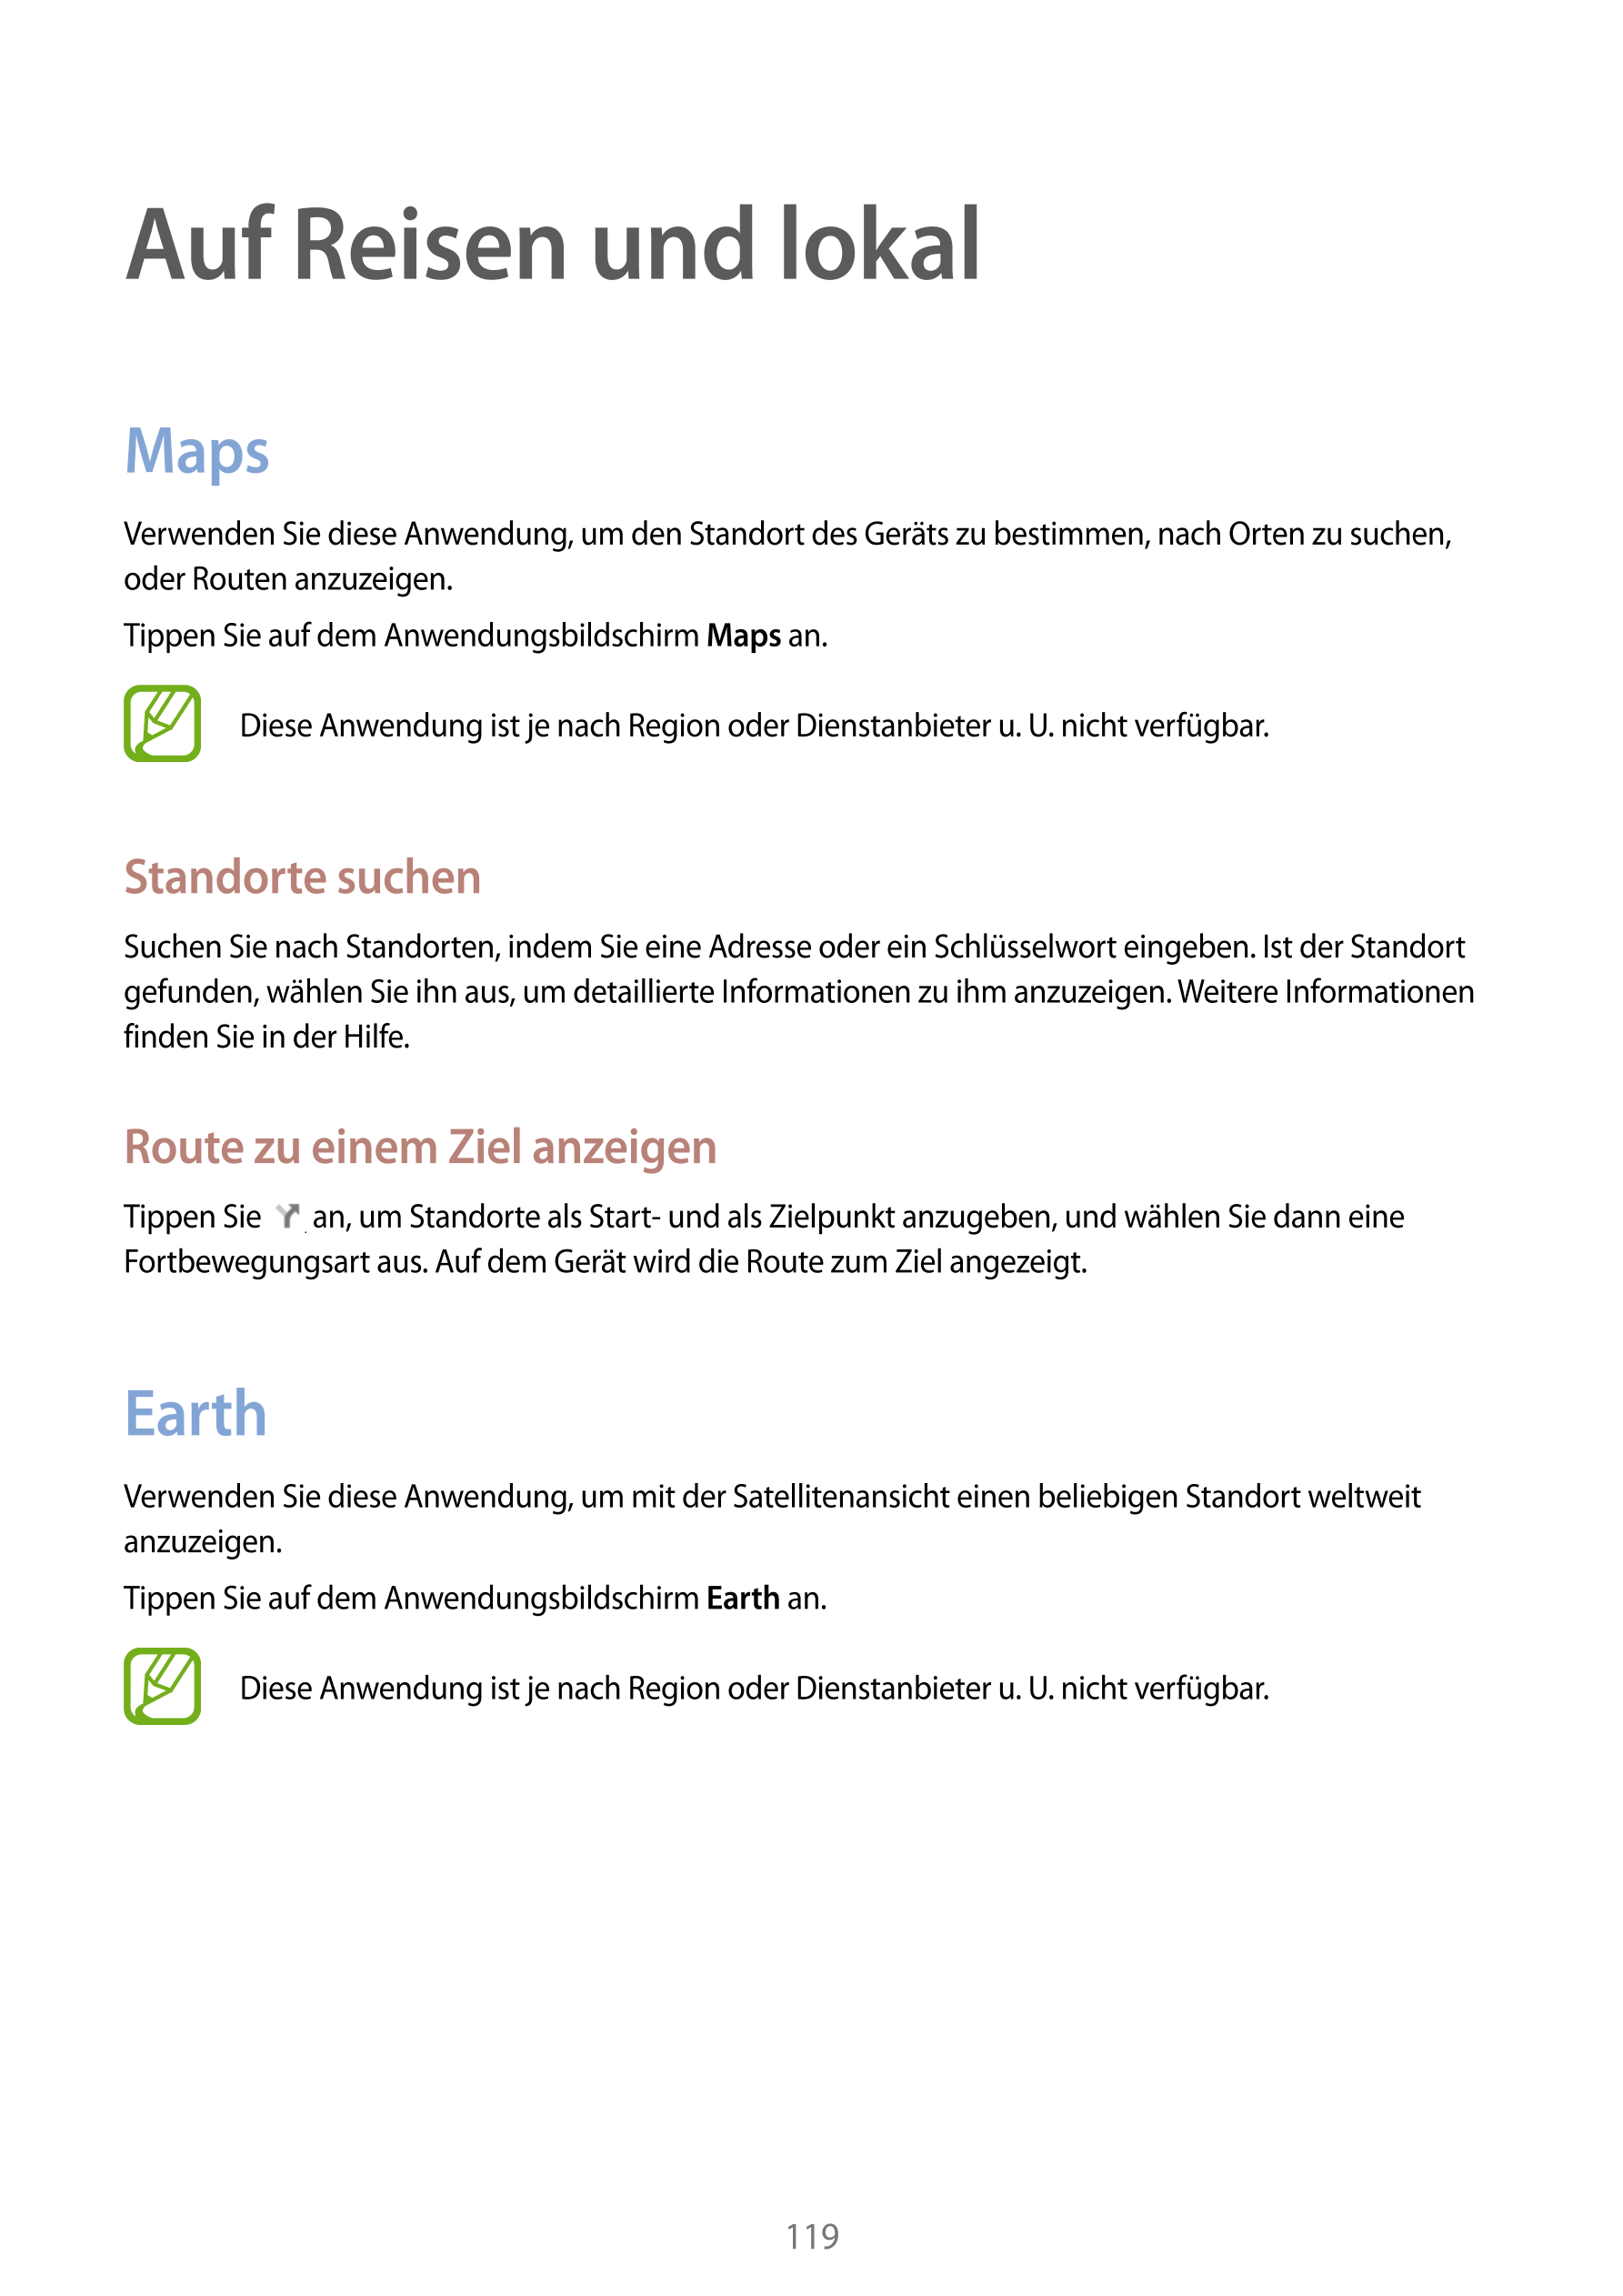 Auf Reisen und lokal
Maps
Verwenden Sie diese Anwendung, um den Standort des Geräts zu bestimmen, nach Orten zu suchen, 
oder Ro